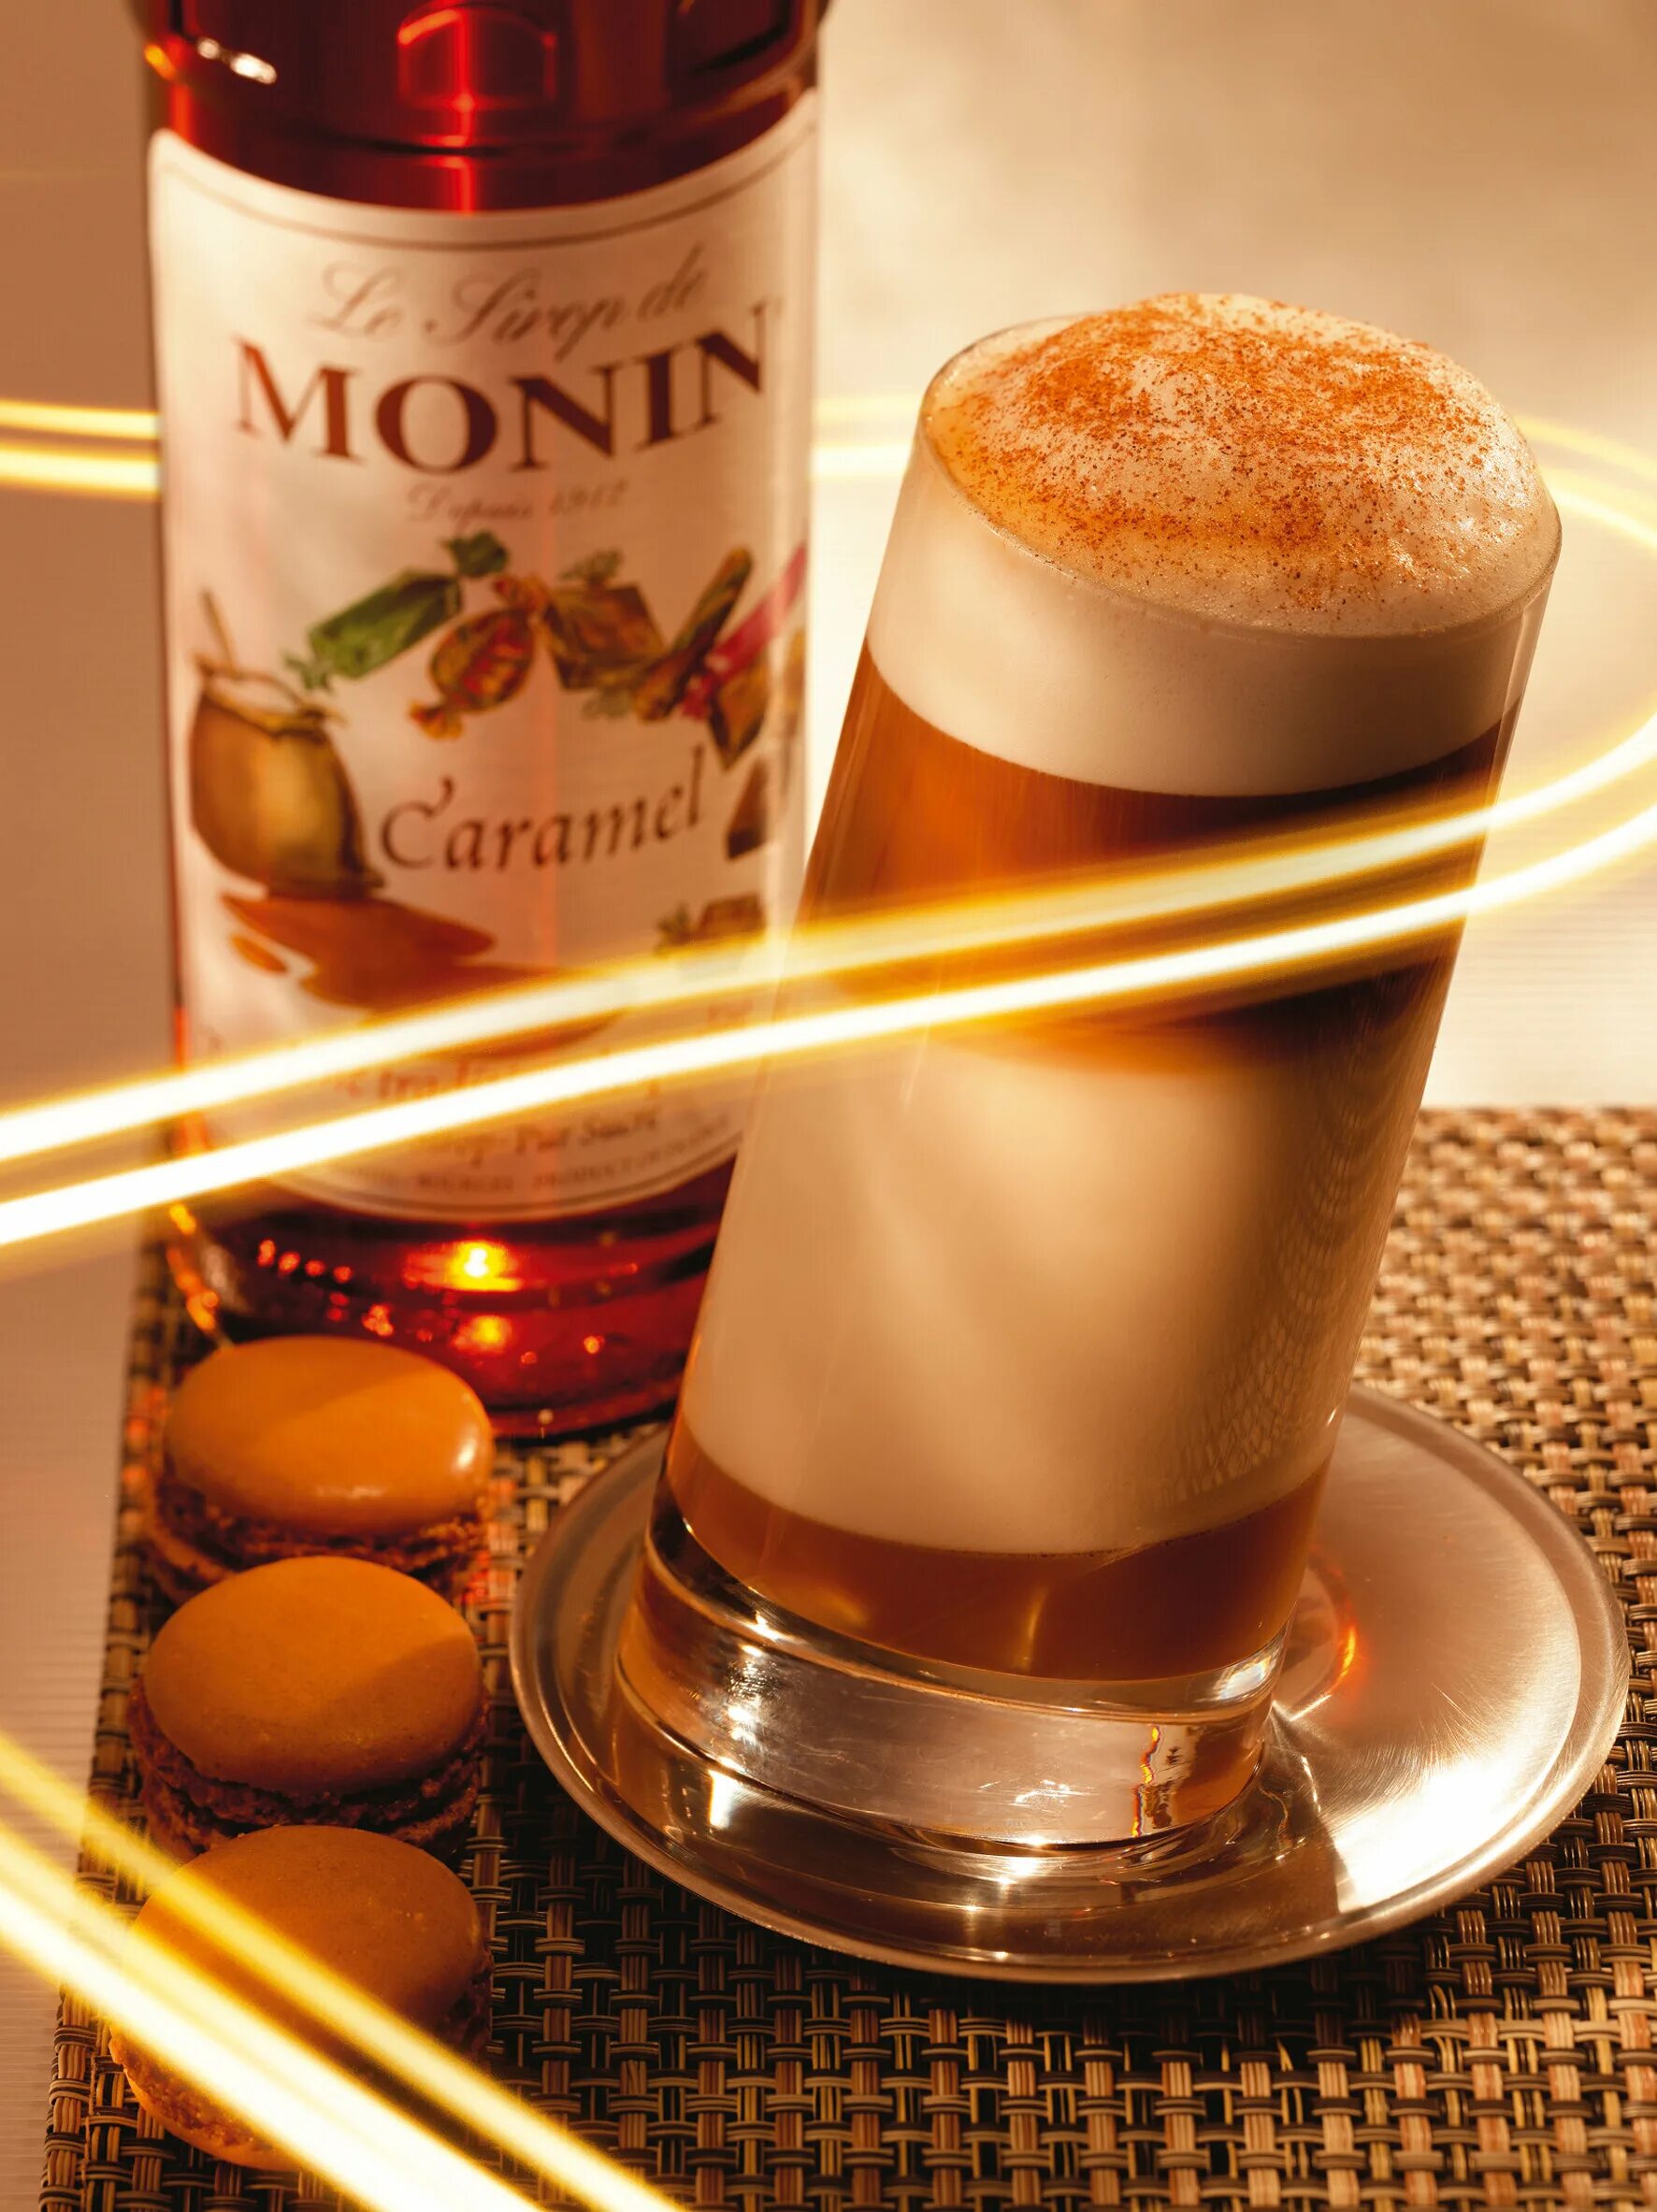 Сироп Монин карамель. Сироп для кофе Monin карамель. Карамельный сироп Monin. Syrup Caramel "Monin" 1 l.